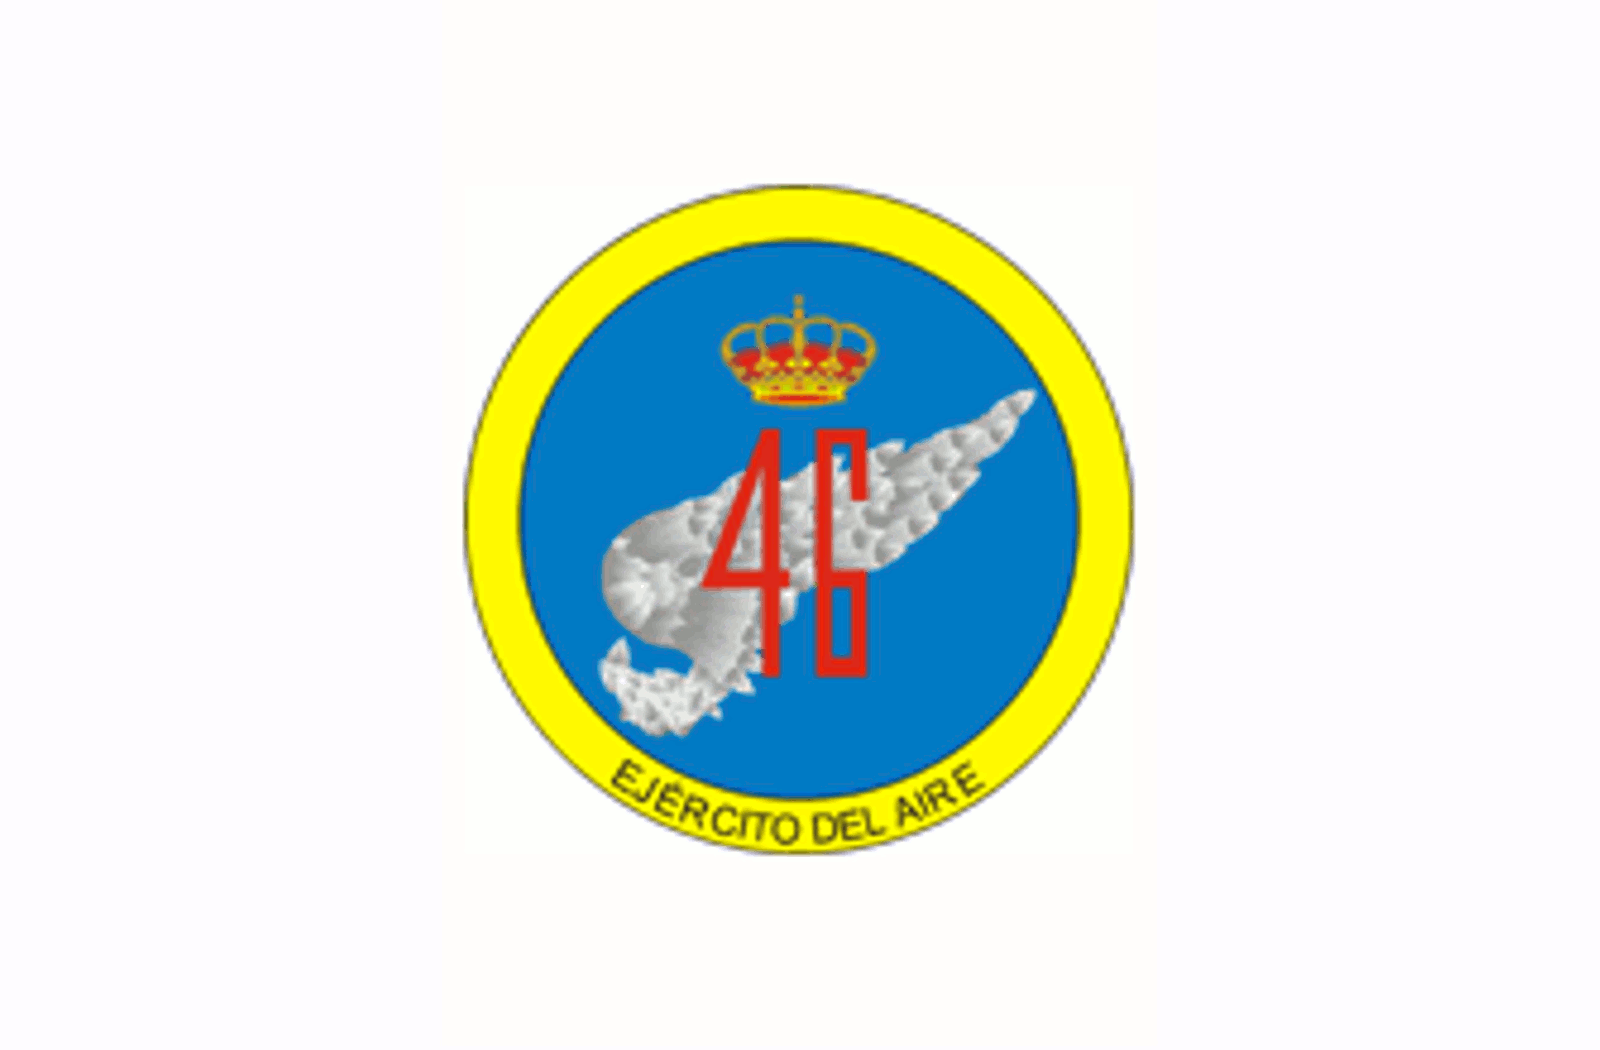 El emblema del Ala 46